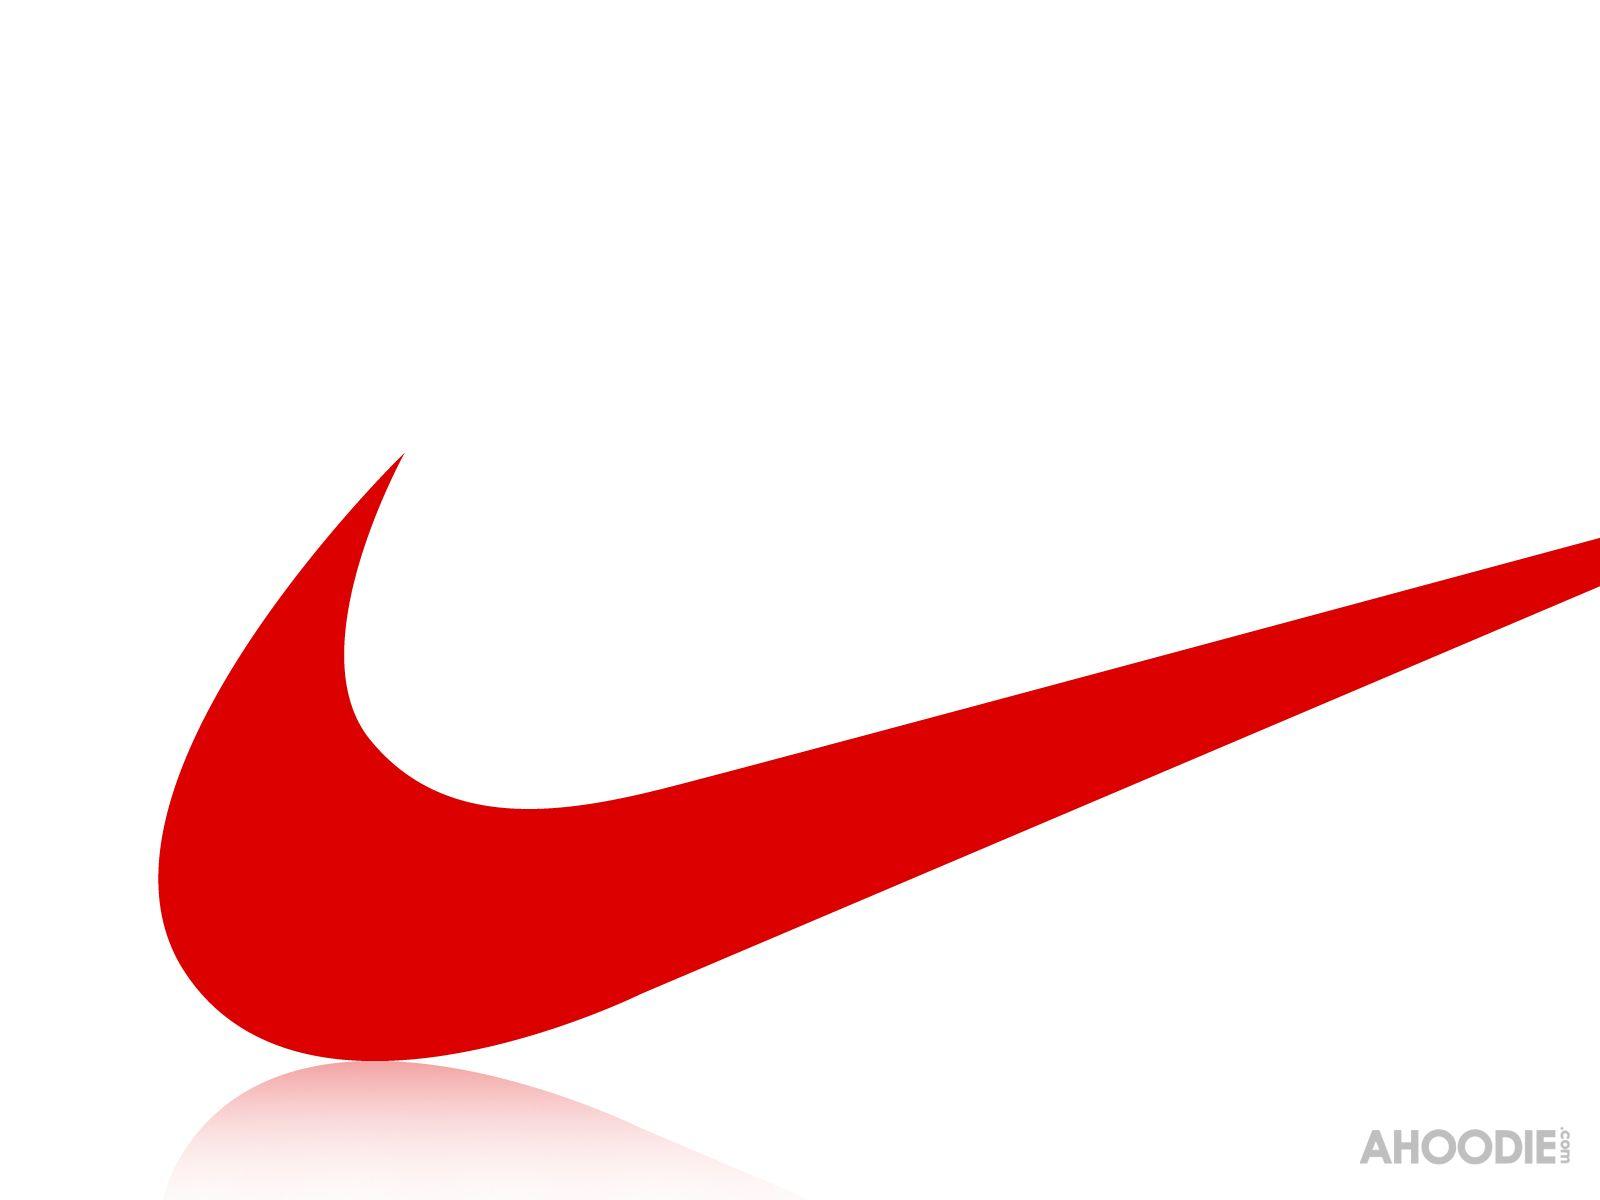 Red Nike Swoosh Logo - Red swoosh car Logos